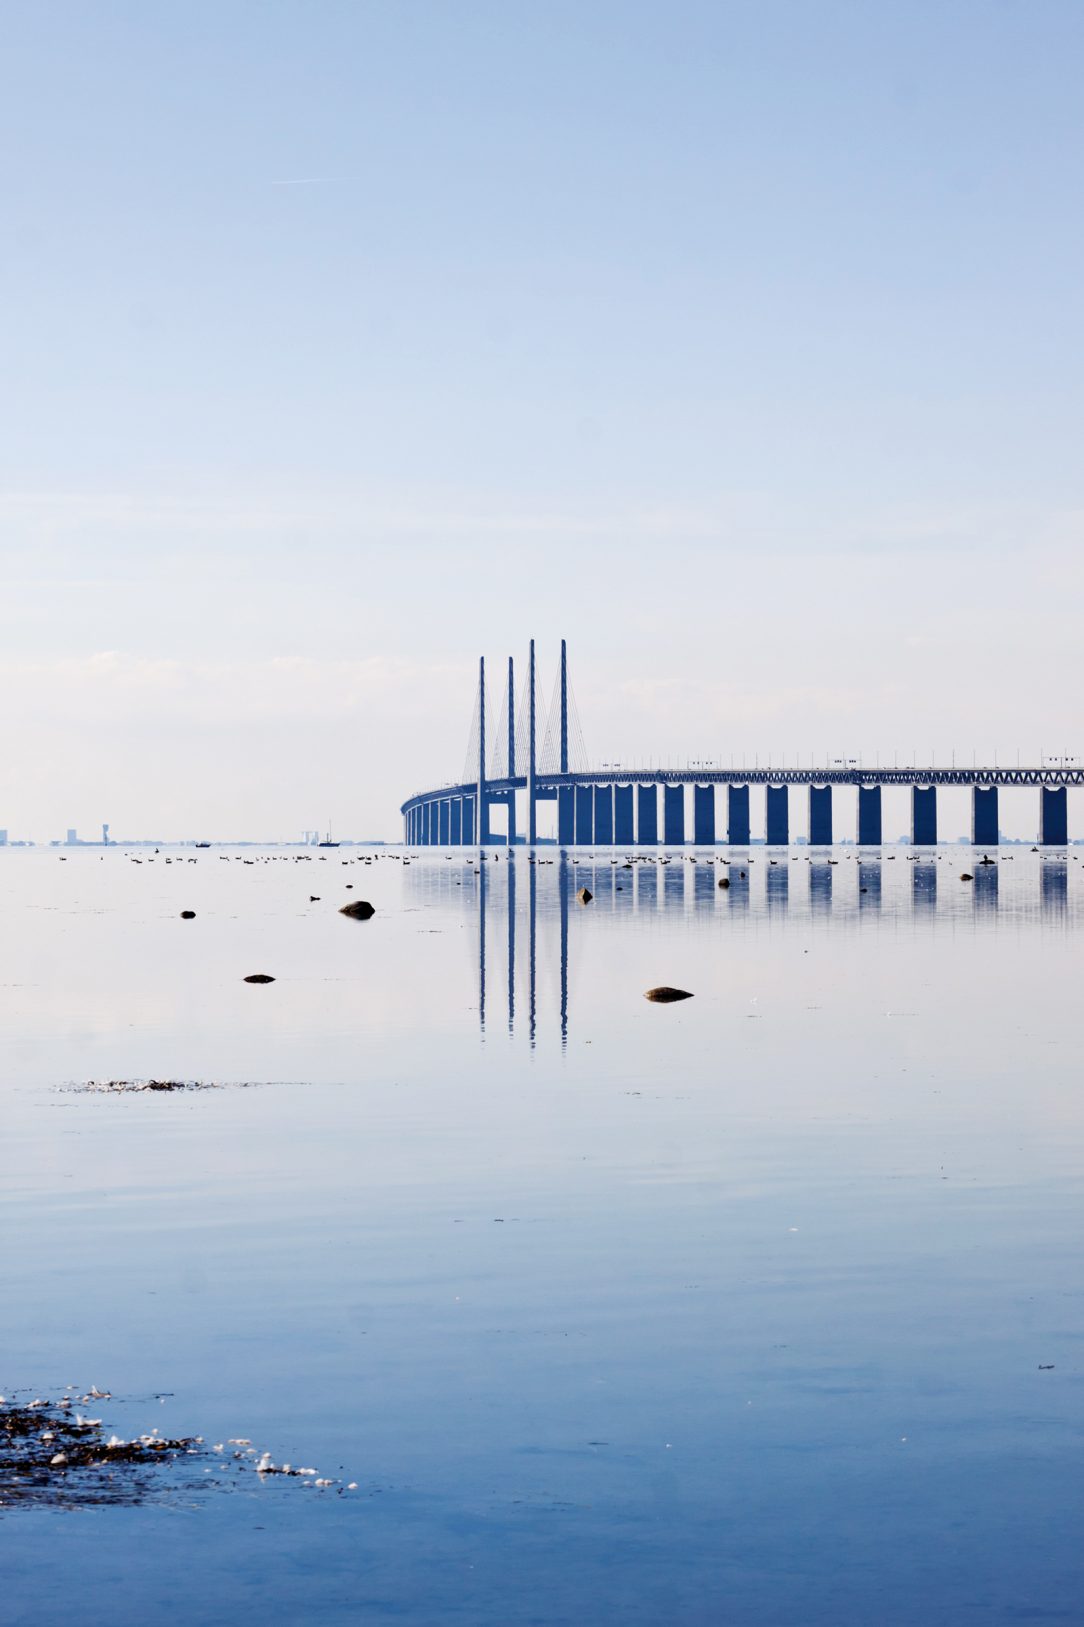 resundský most spojuje Dánsko a Švédsko